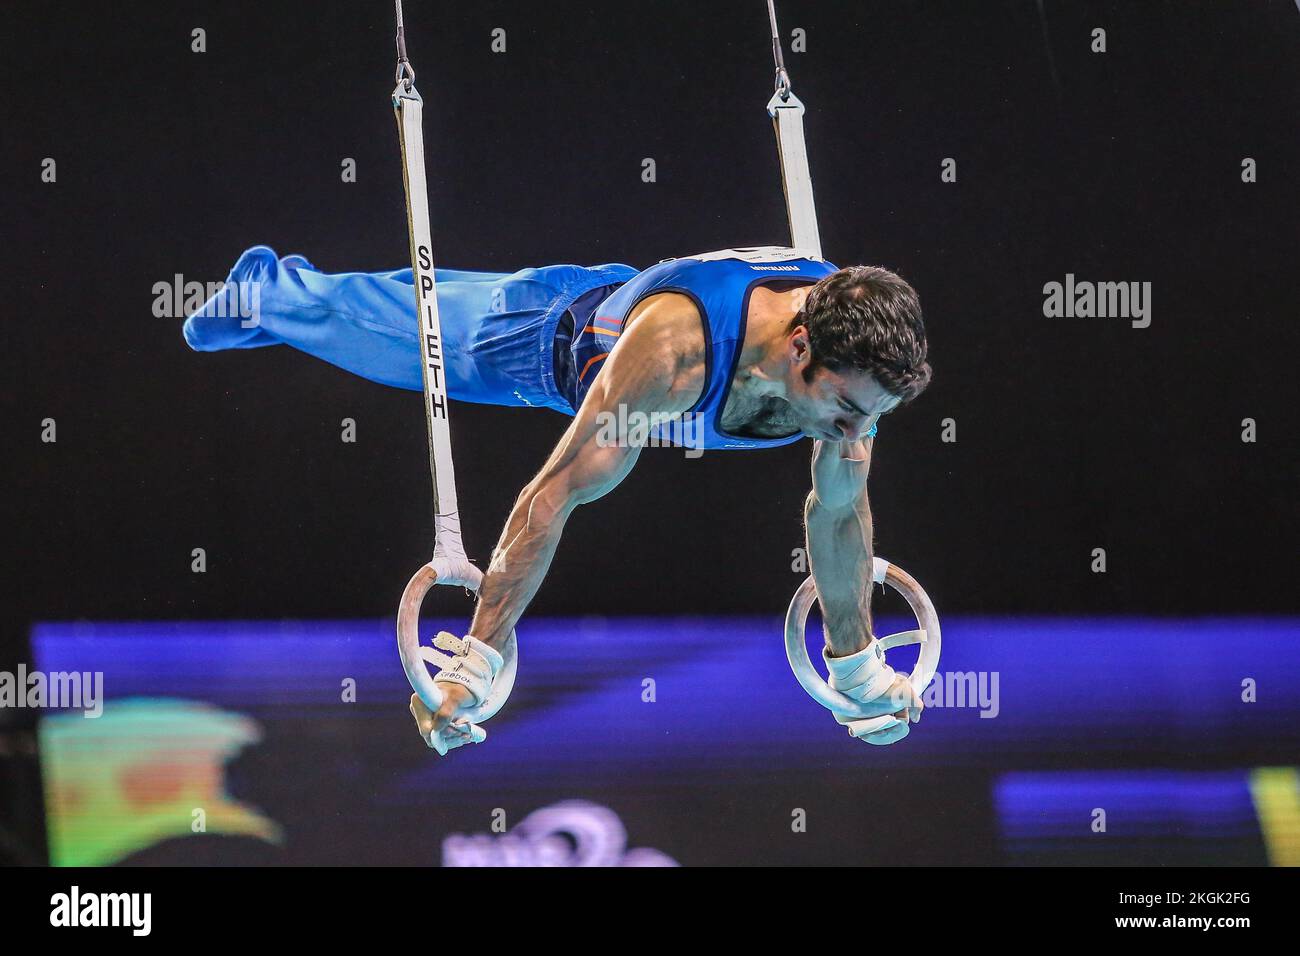 Szczecin, Pologne, 10 avril 2019: L'athlète arménien Davtyan Vahagn est en compétition sur les anneaux lors des championnats de gymnastique artistique Banque D'Images